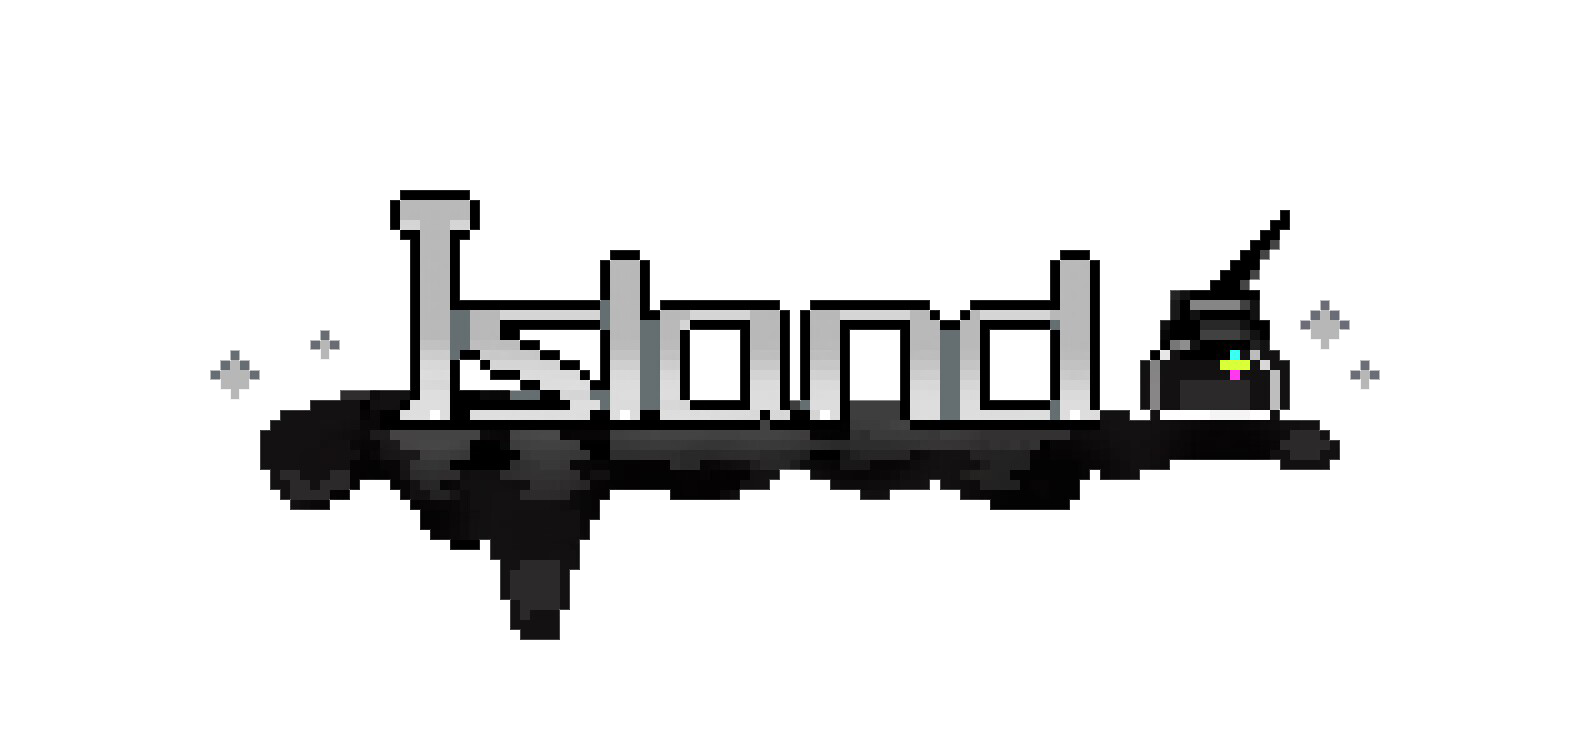 于岛Logo透明.png